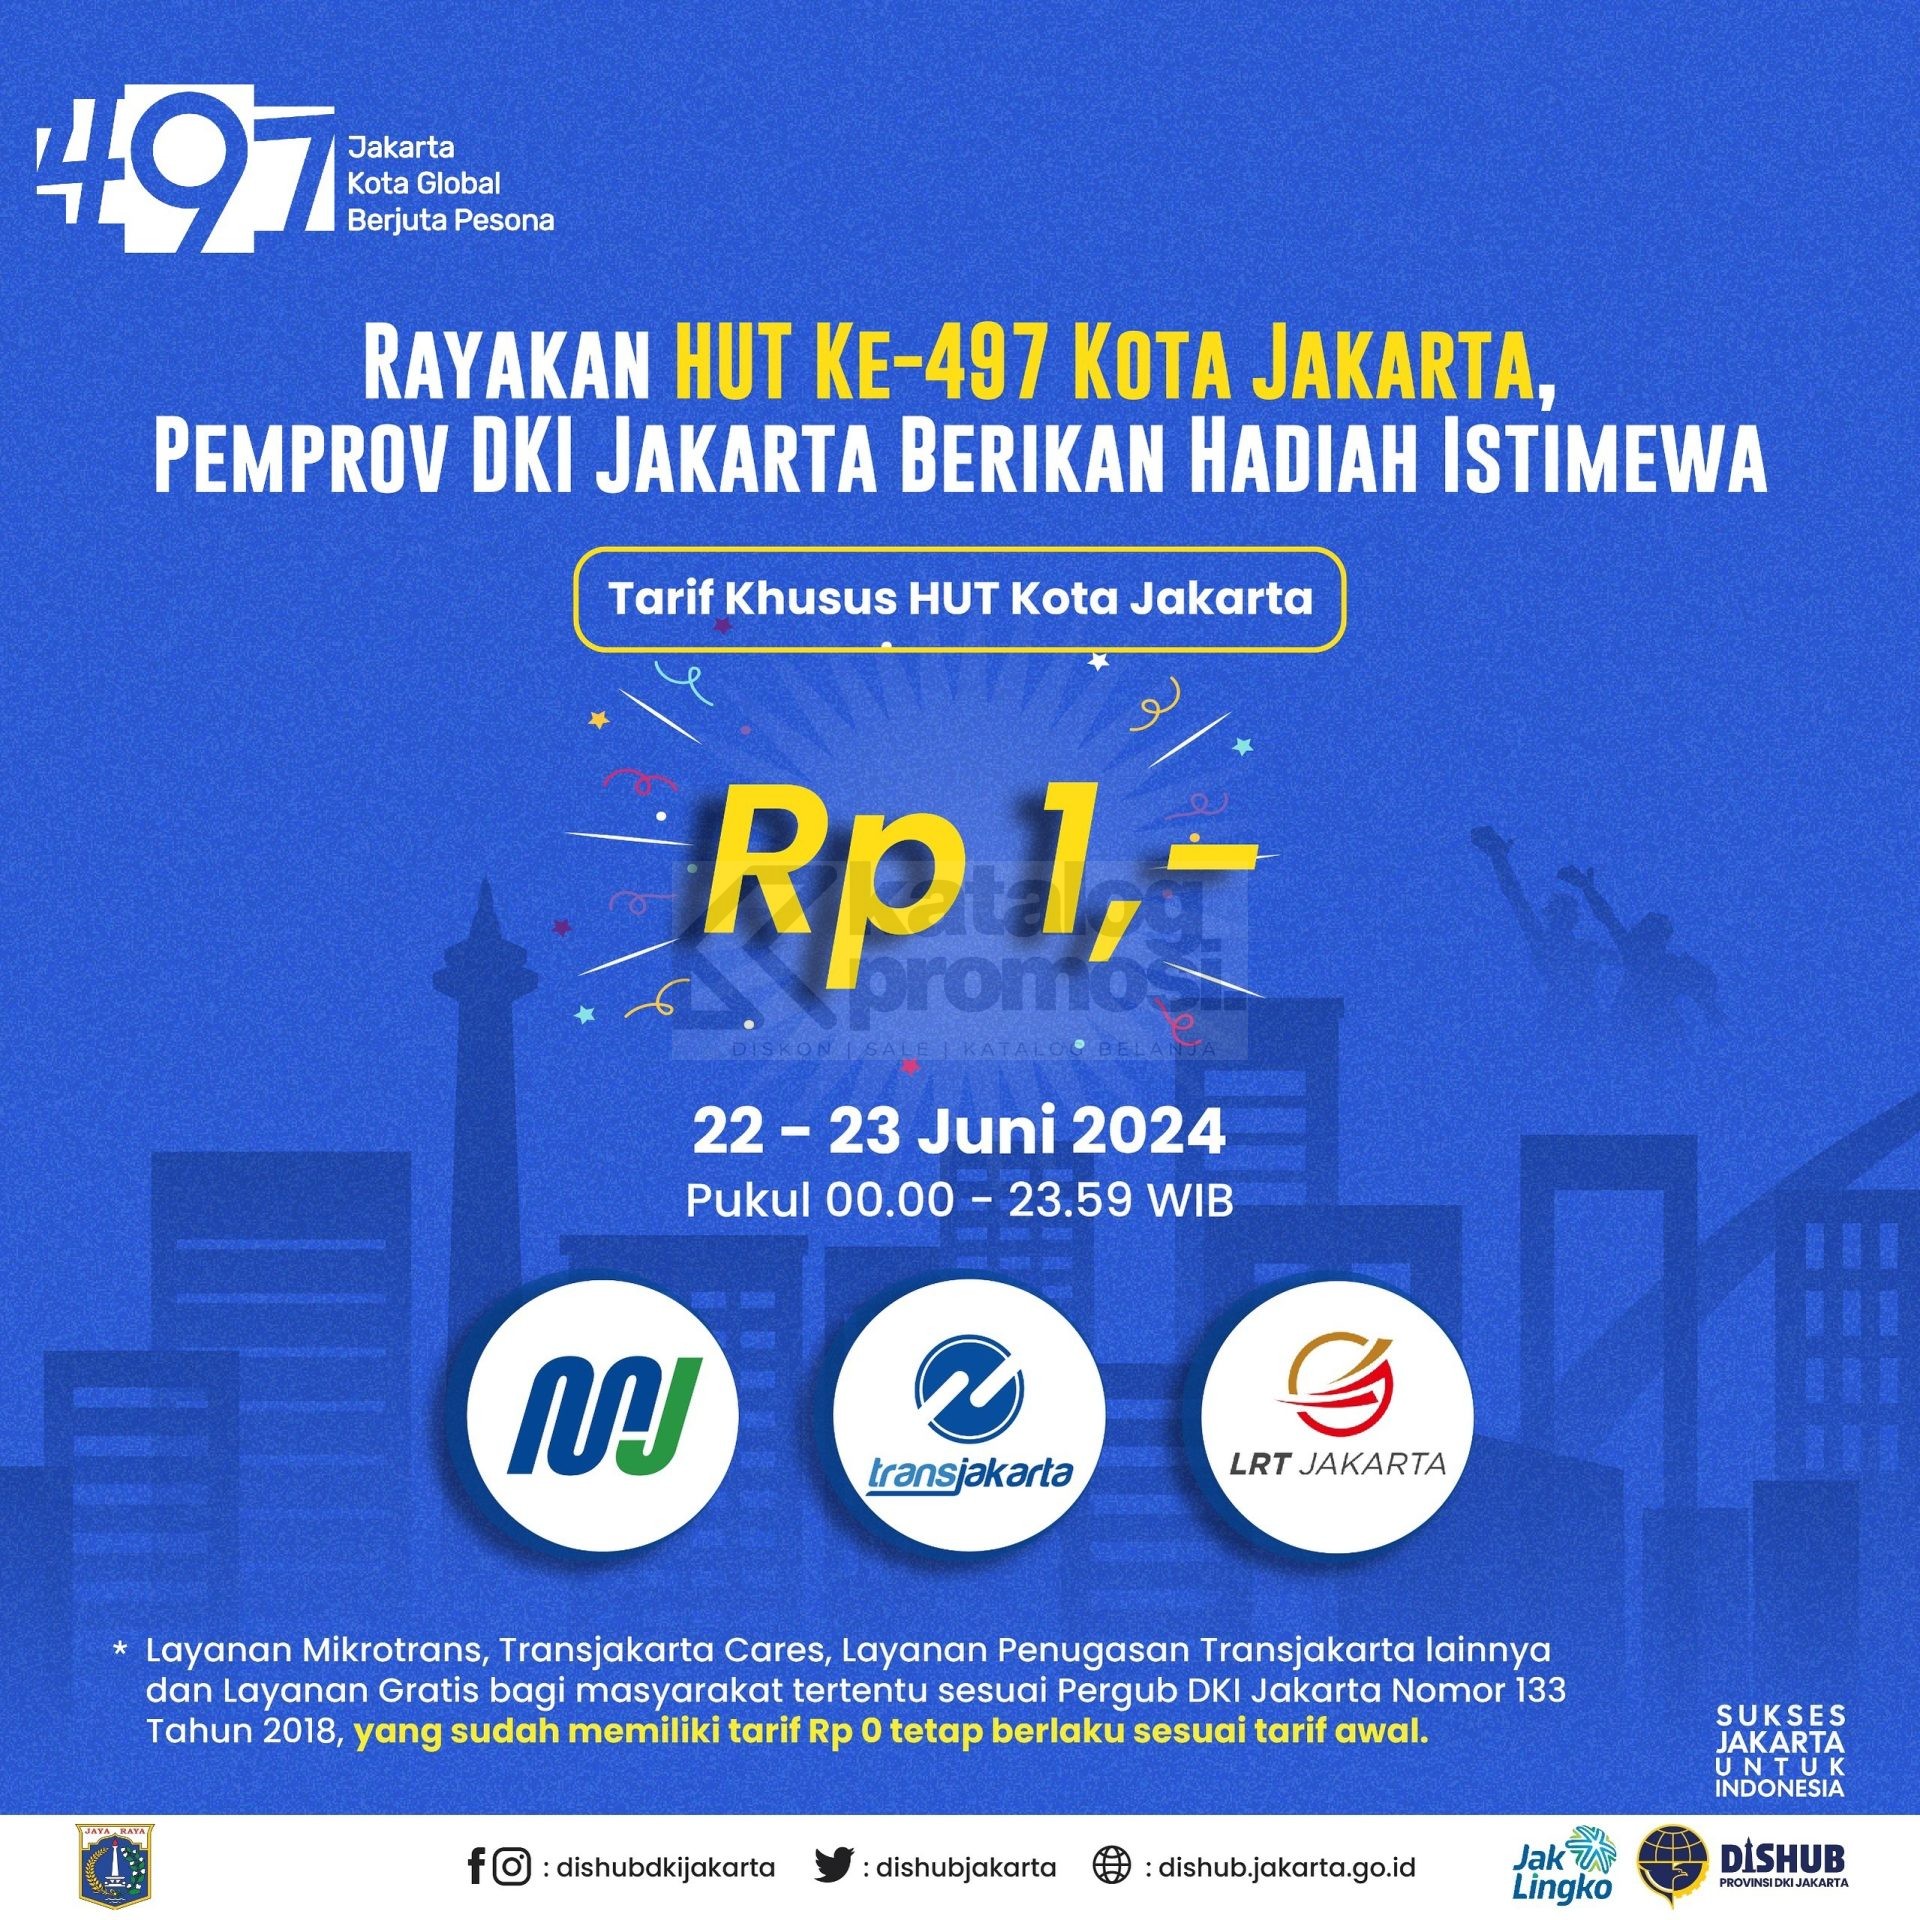 SPESIAL HUT Jakarta ke-497, Tarif Transjakarta, MRT dan LRT cuma Rp. 1,- aja Khusus tanggal 22 dan 23 Juni 2024 mulai pukul 00.00 - 23.59